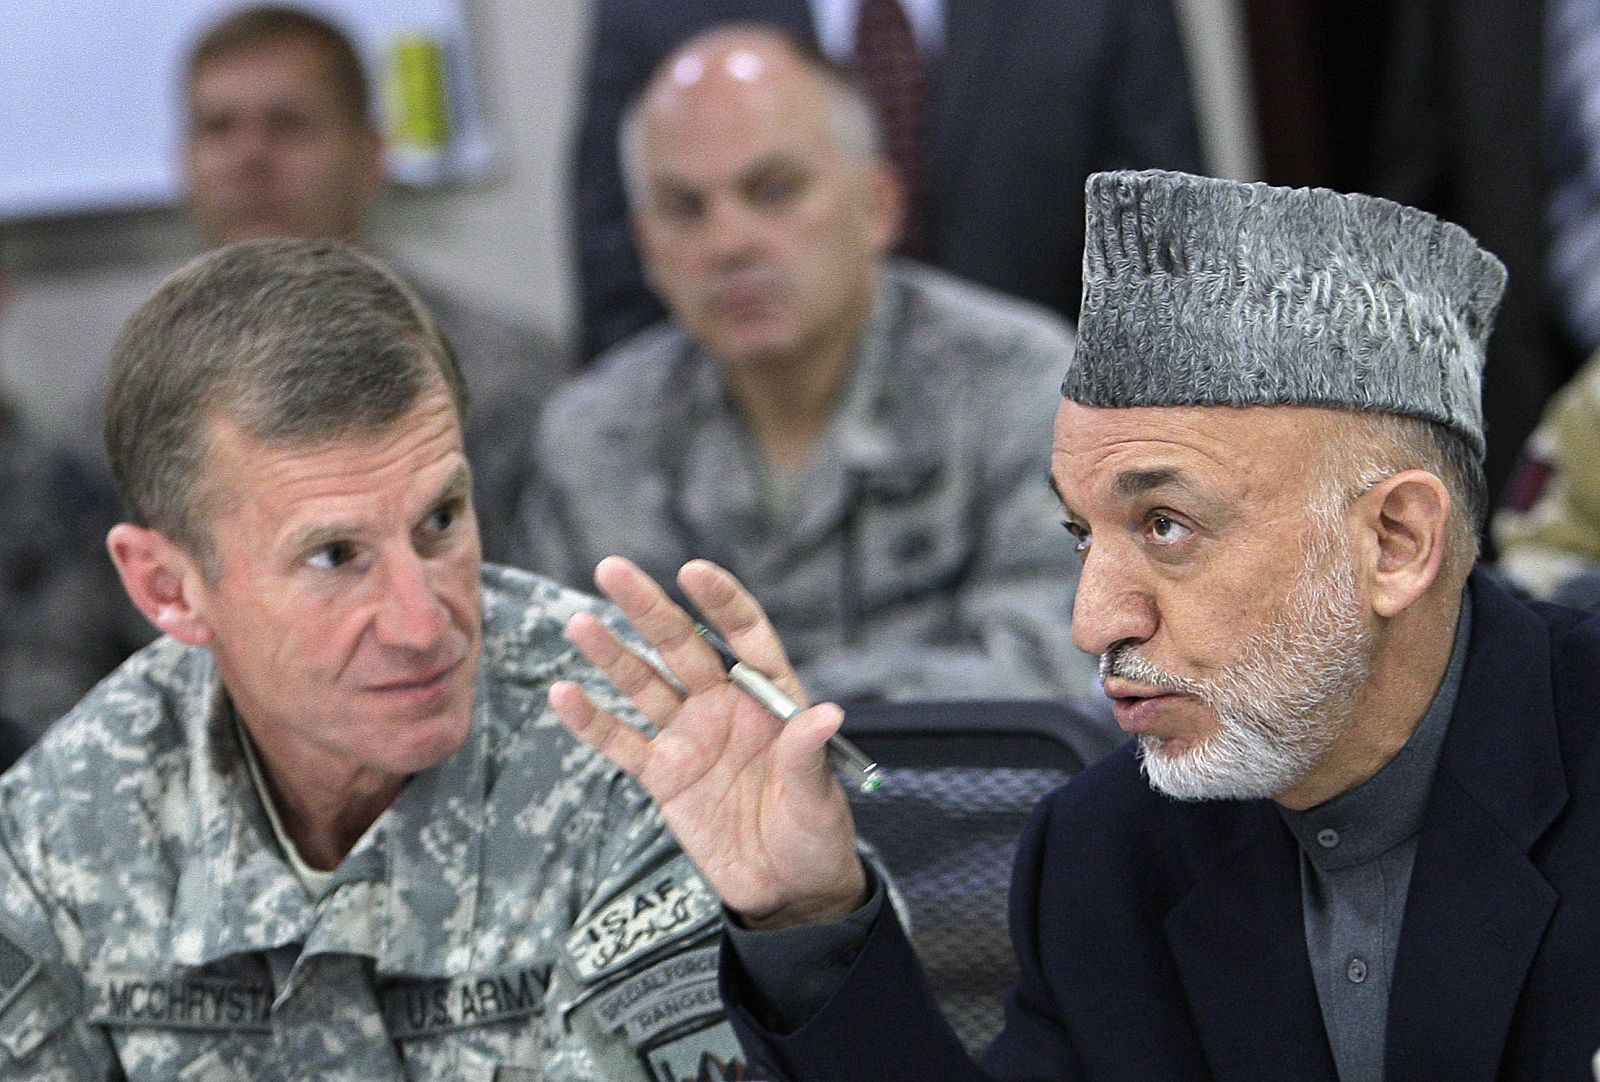 El presidente de Afganistán, Hamid Karzai, habla con el general McChrystal en las oficinas de la ISAF en Kabul.